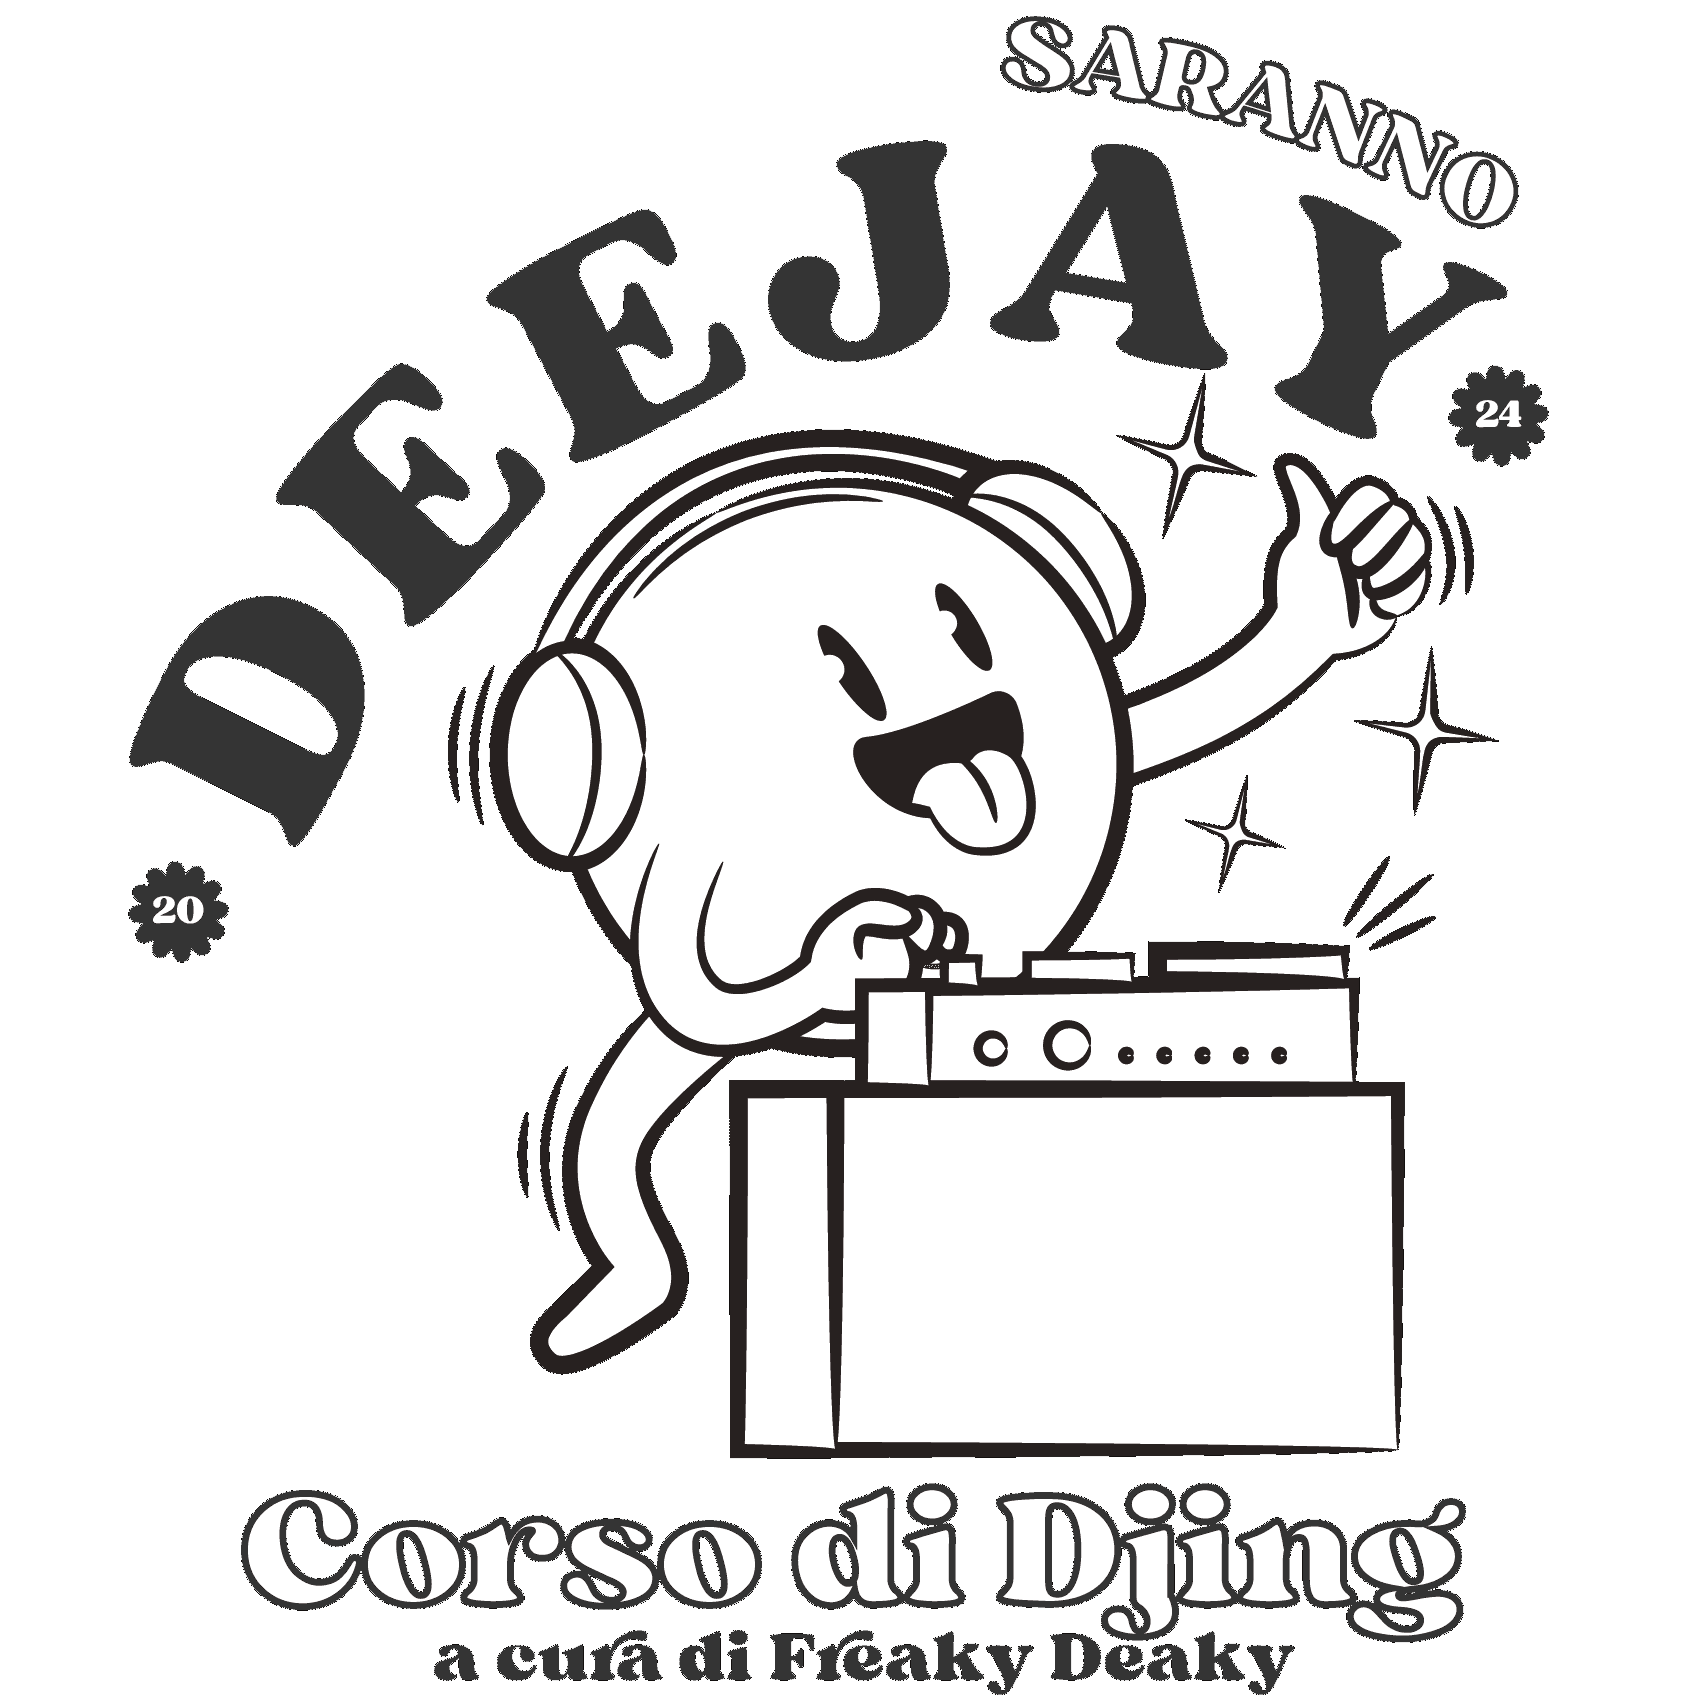 DJ / Freaky Deaky